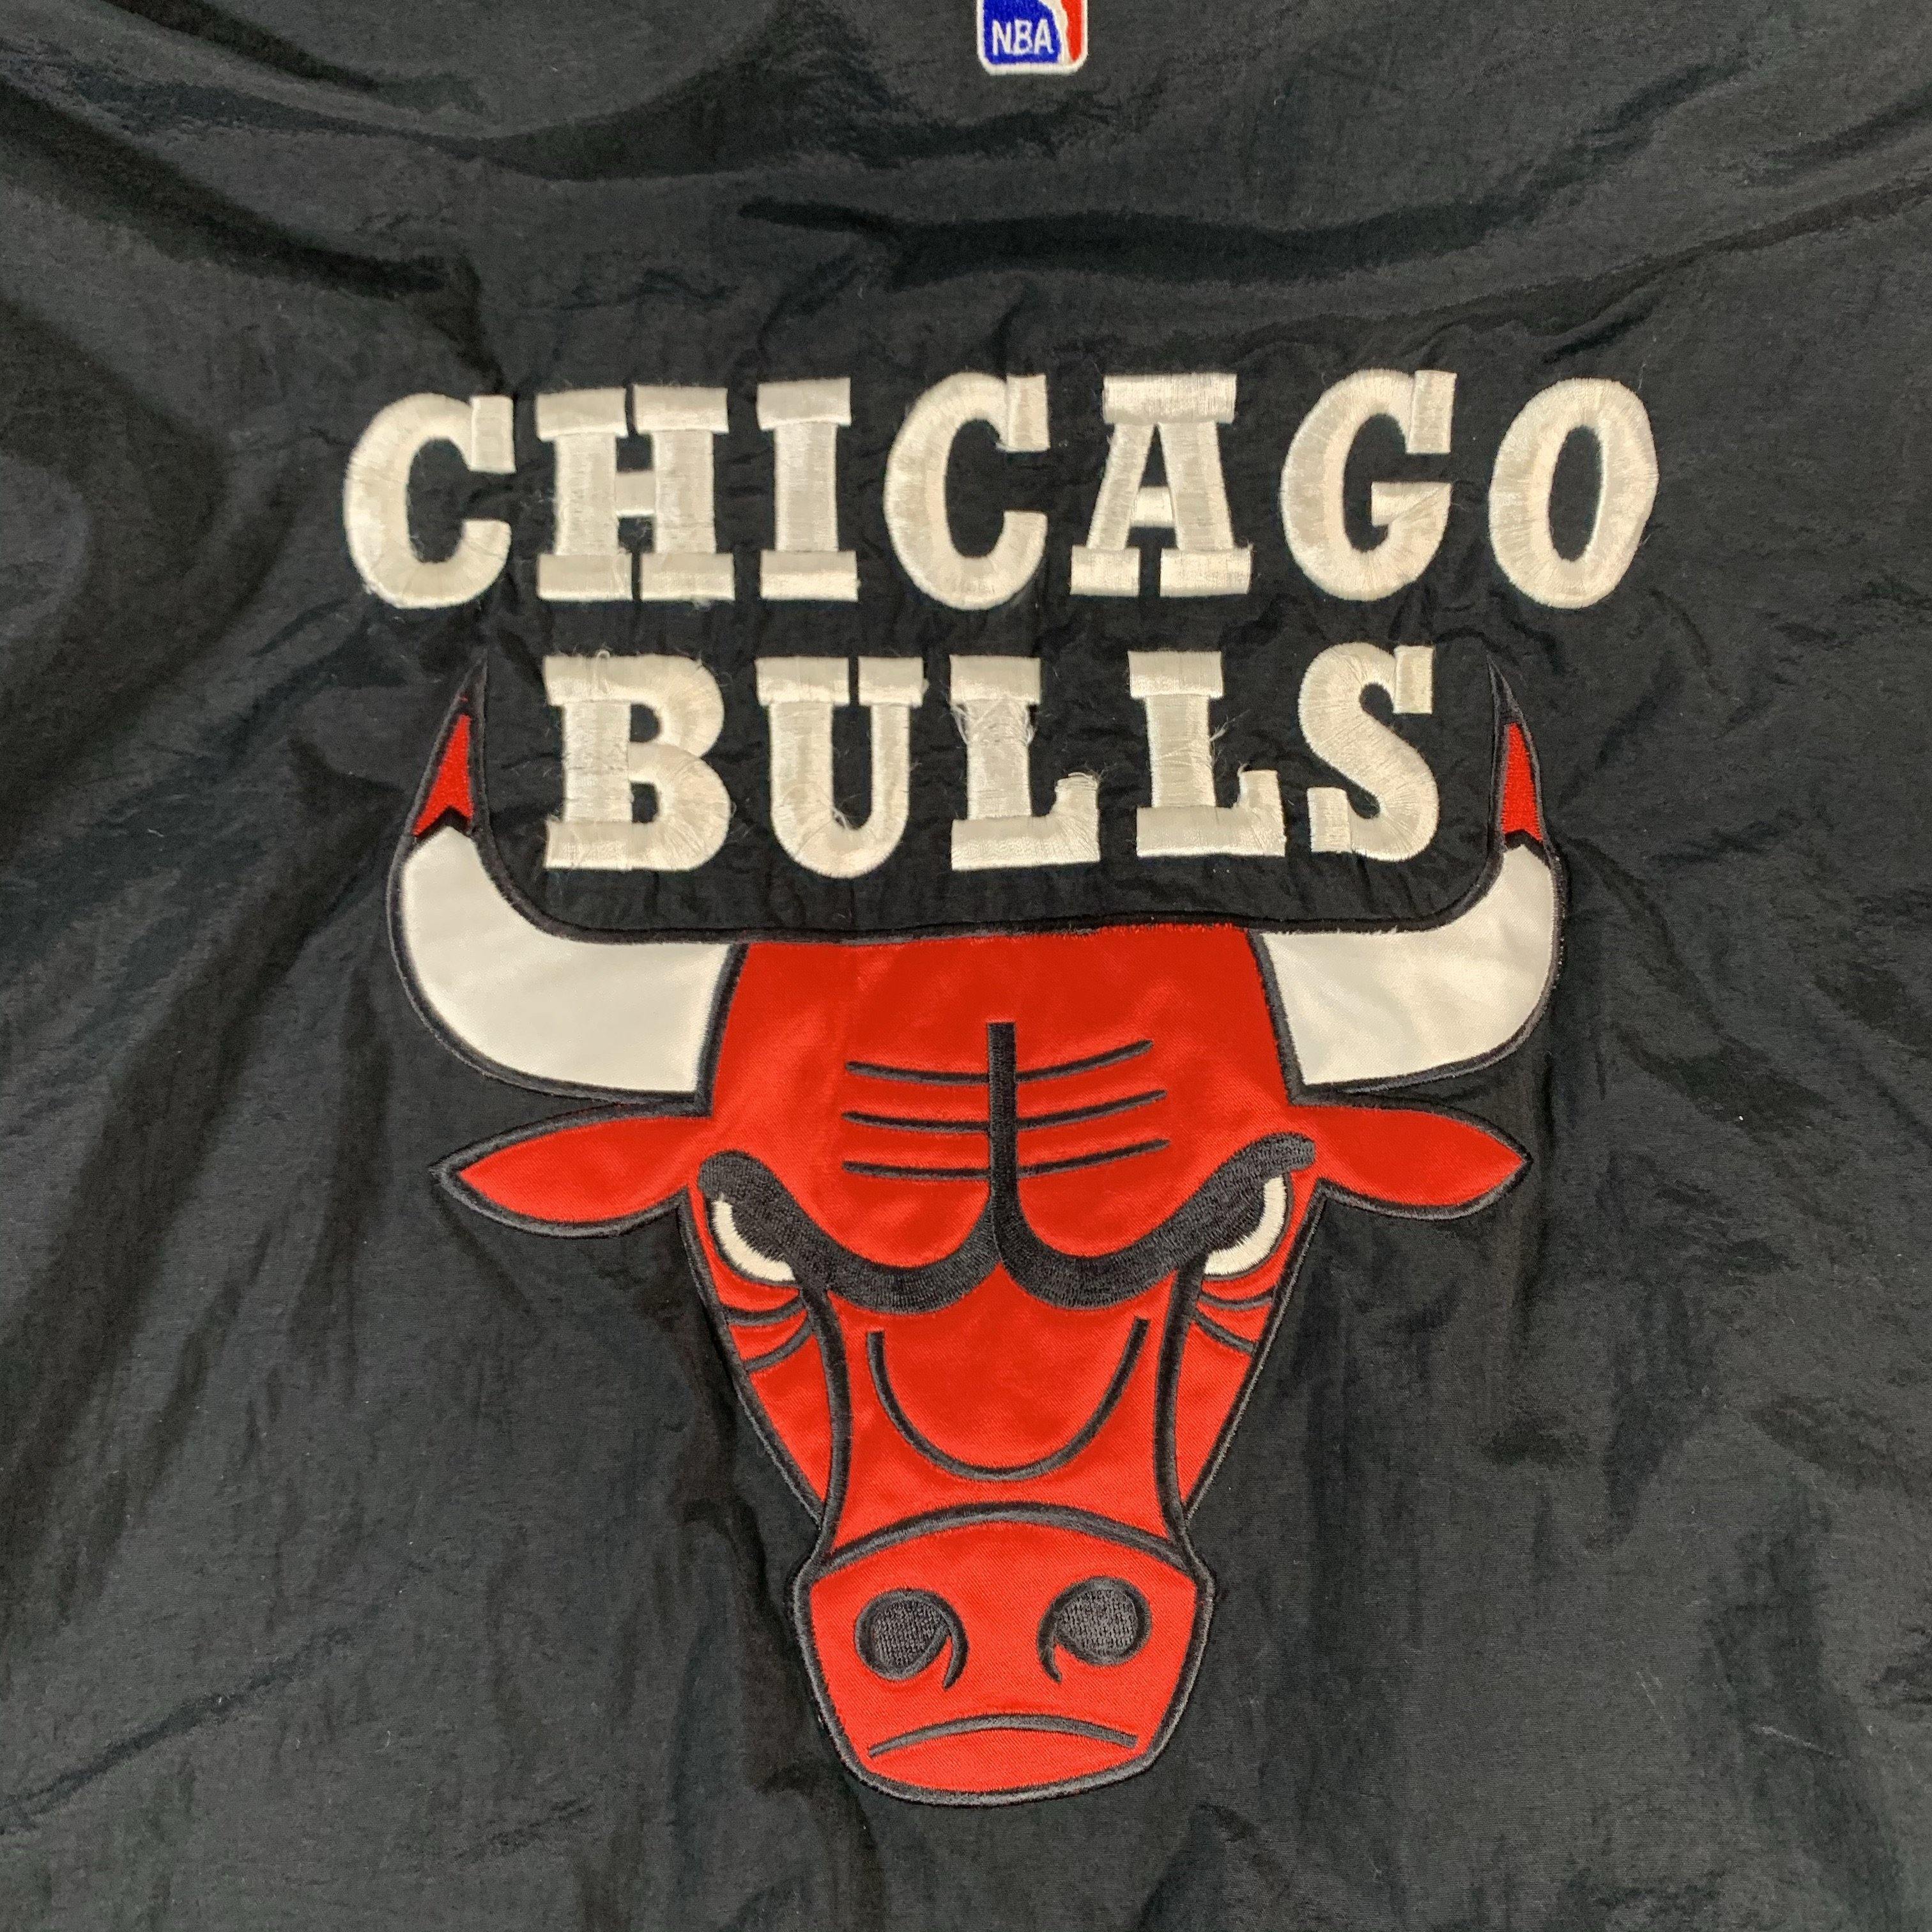 NBA Chicago Bulls Puffer Jacket